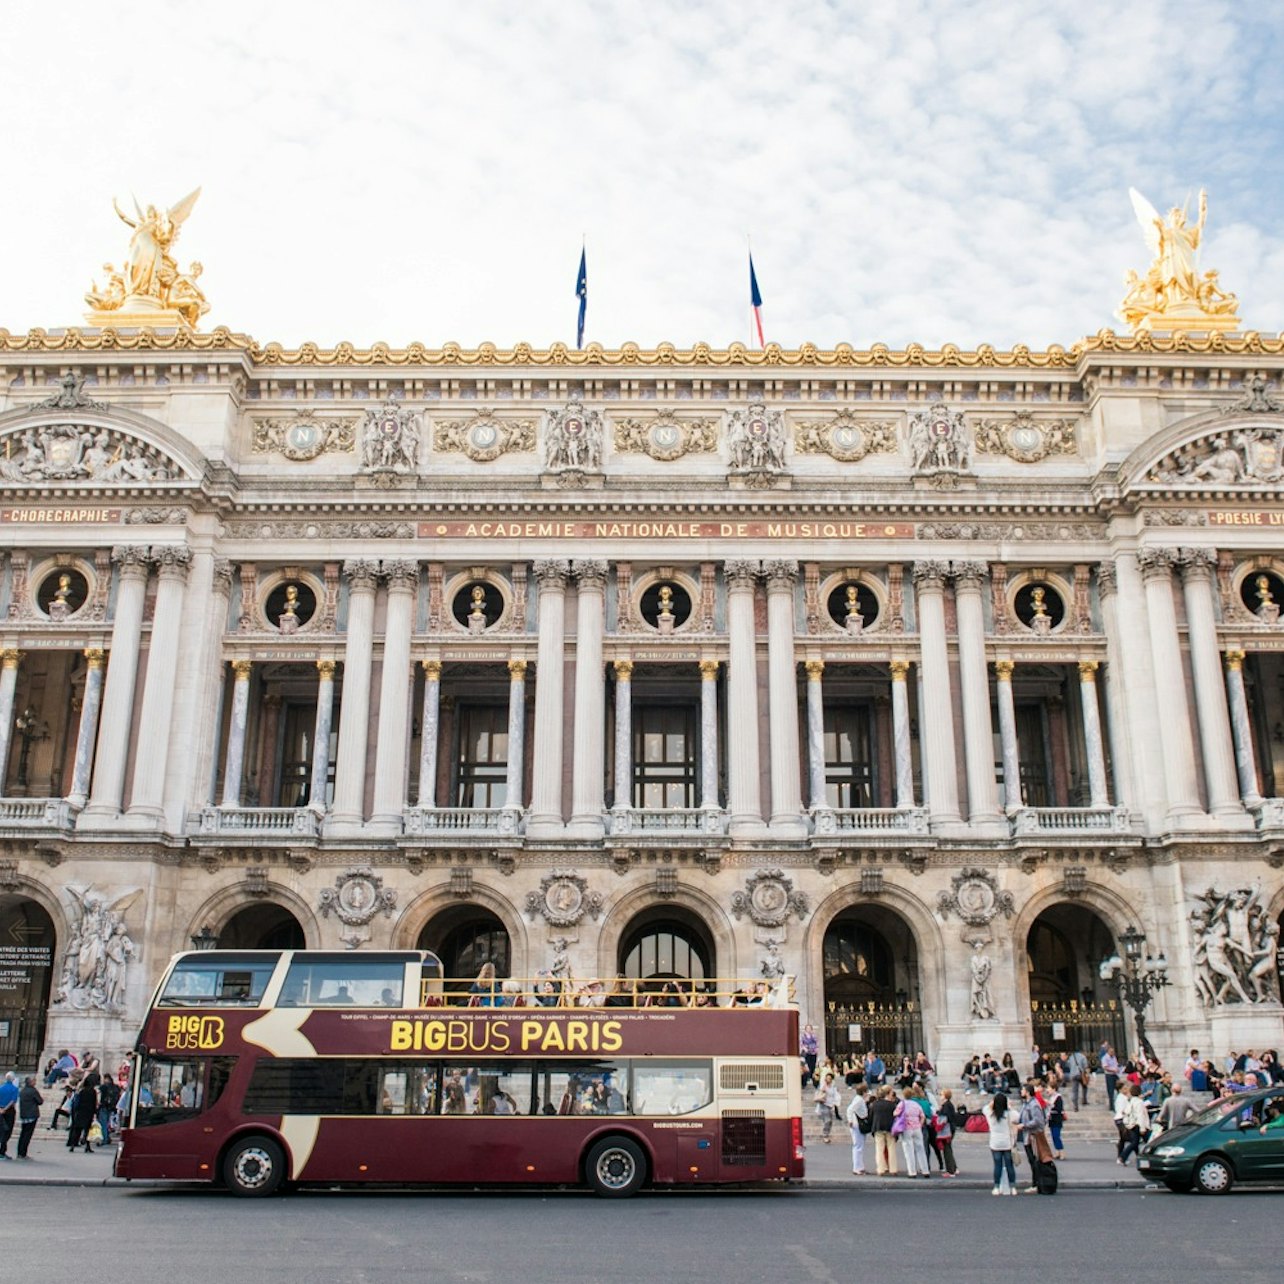 Big Bus Paris: Hop-on Hop-off Tour + Seine River Cruise - Accommodations in Paris